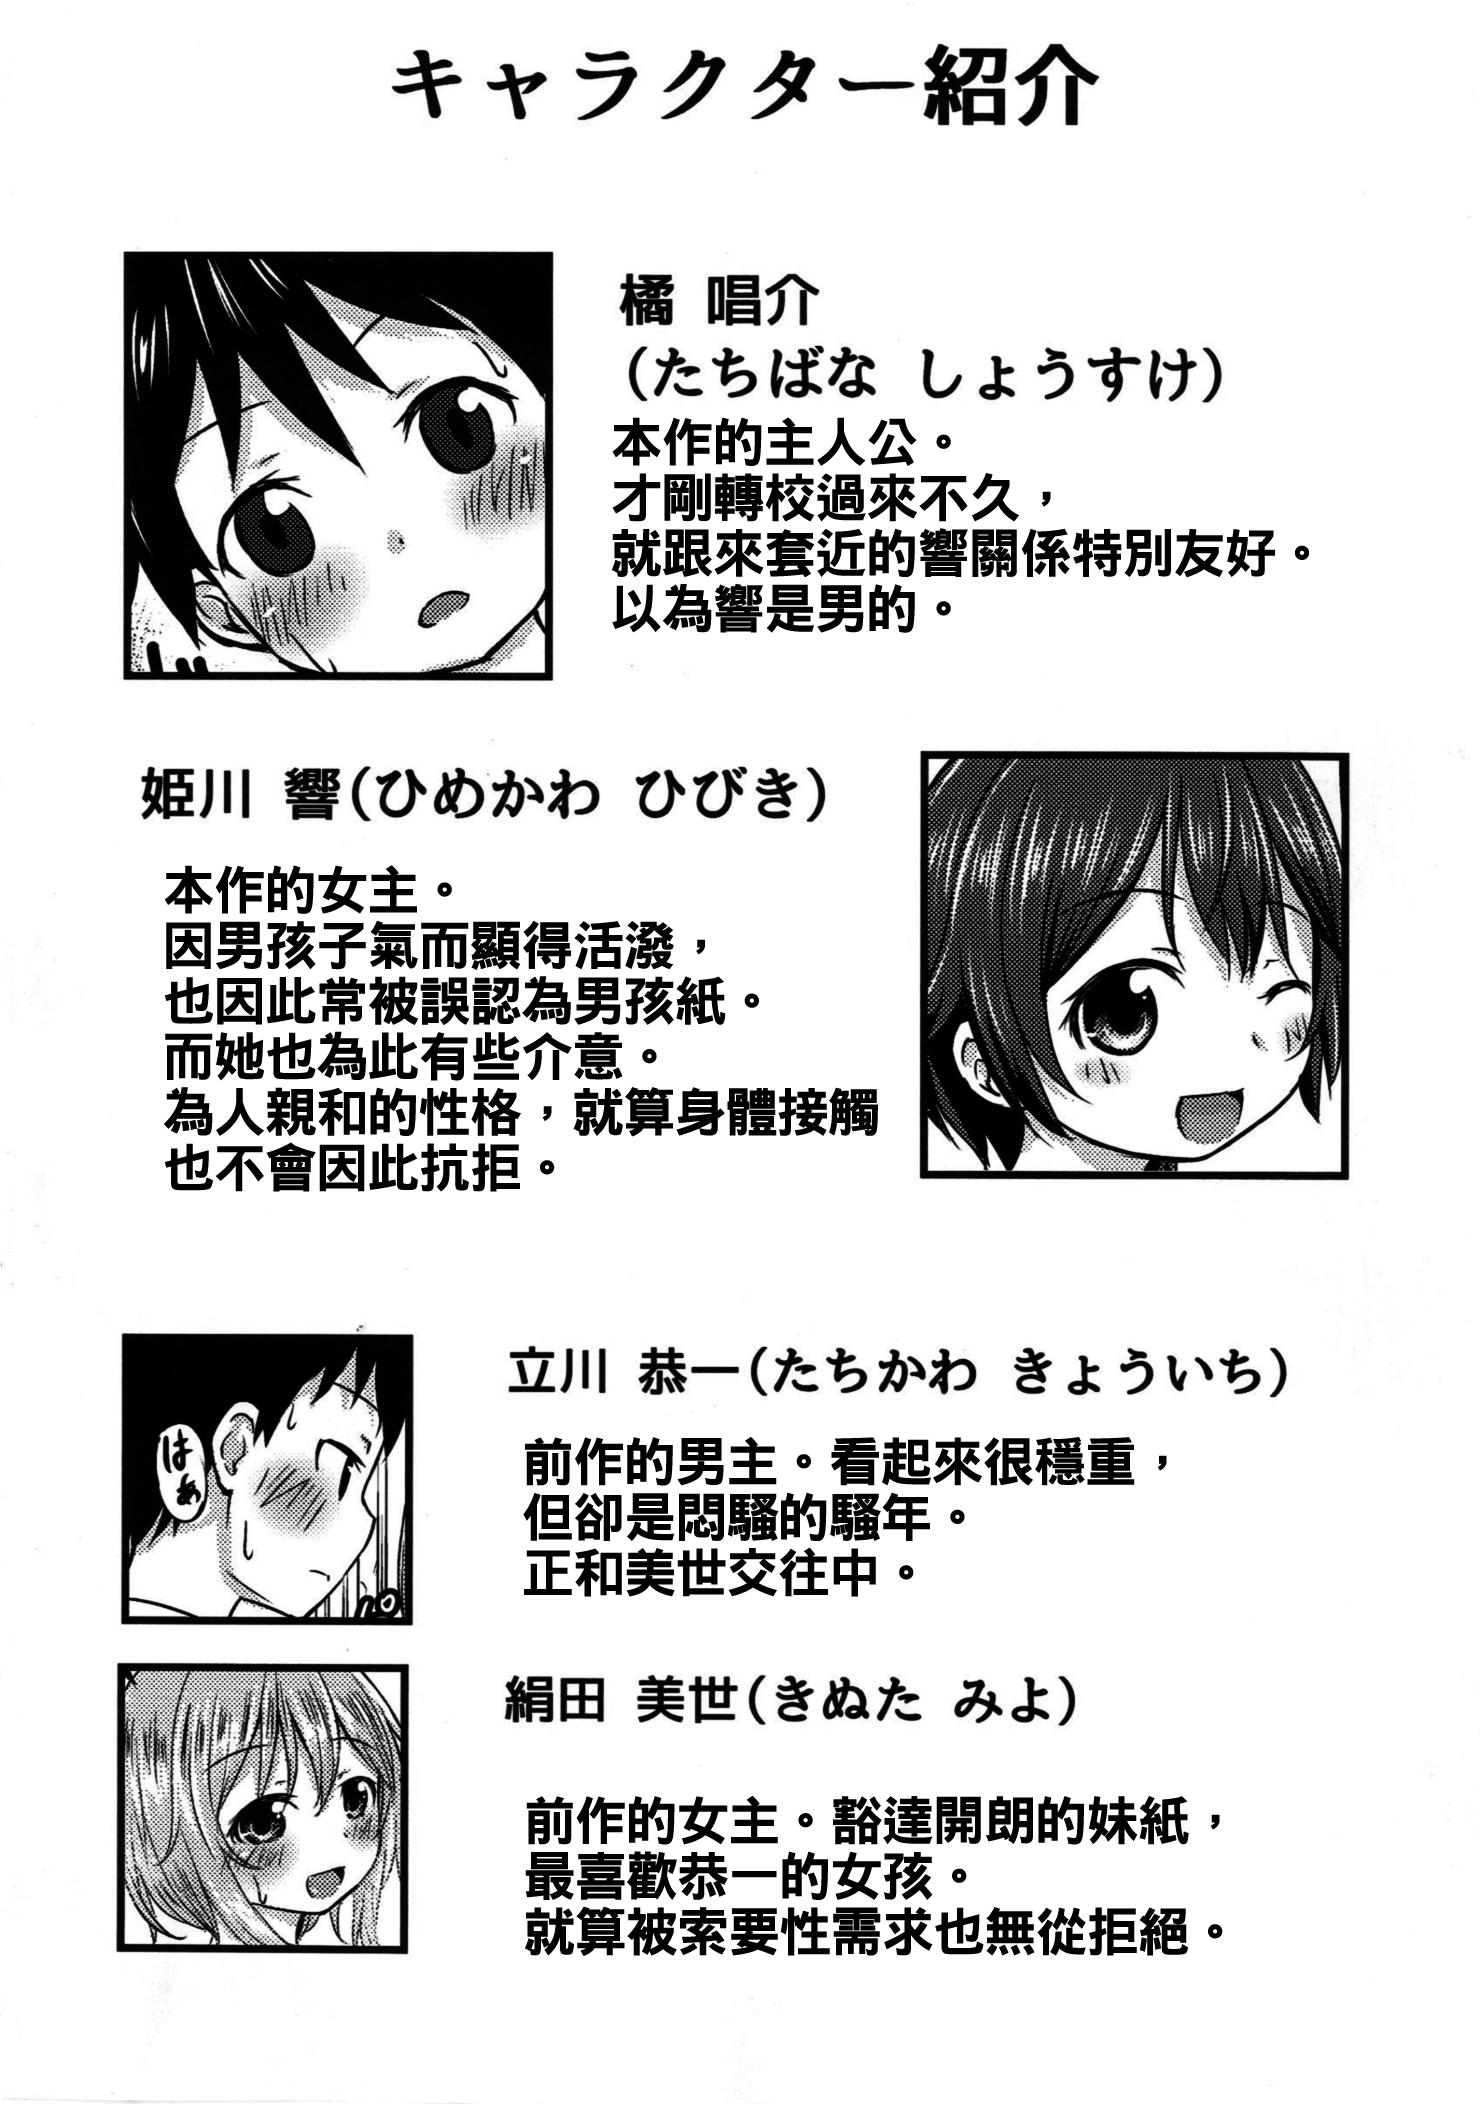 Jizz Chiisana Seikatsu 2 Sesso - Page 4